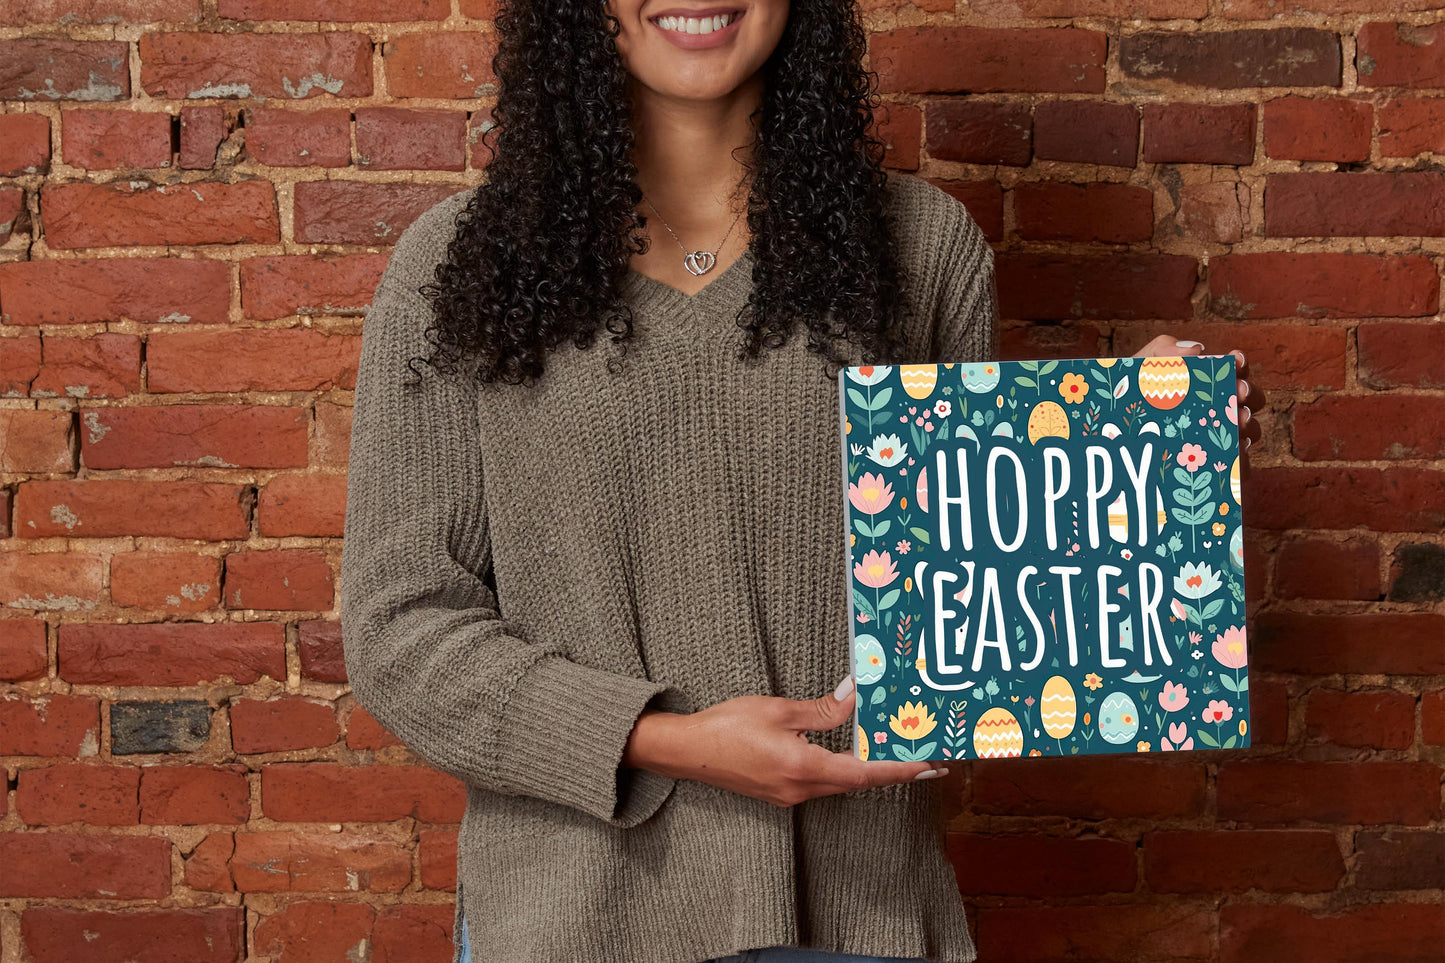 Spring Pastel Hoppy Easter | 10x10